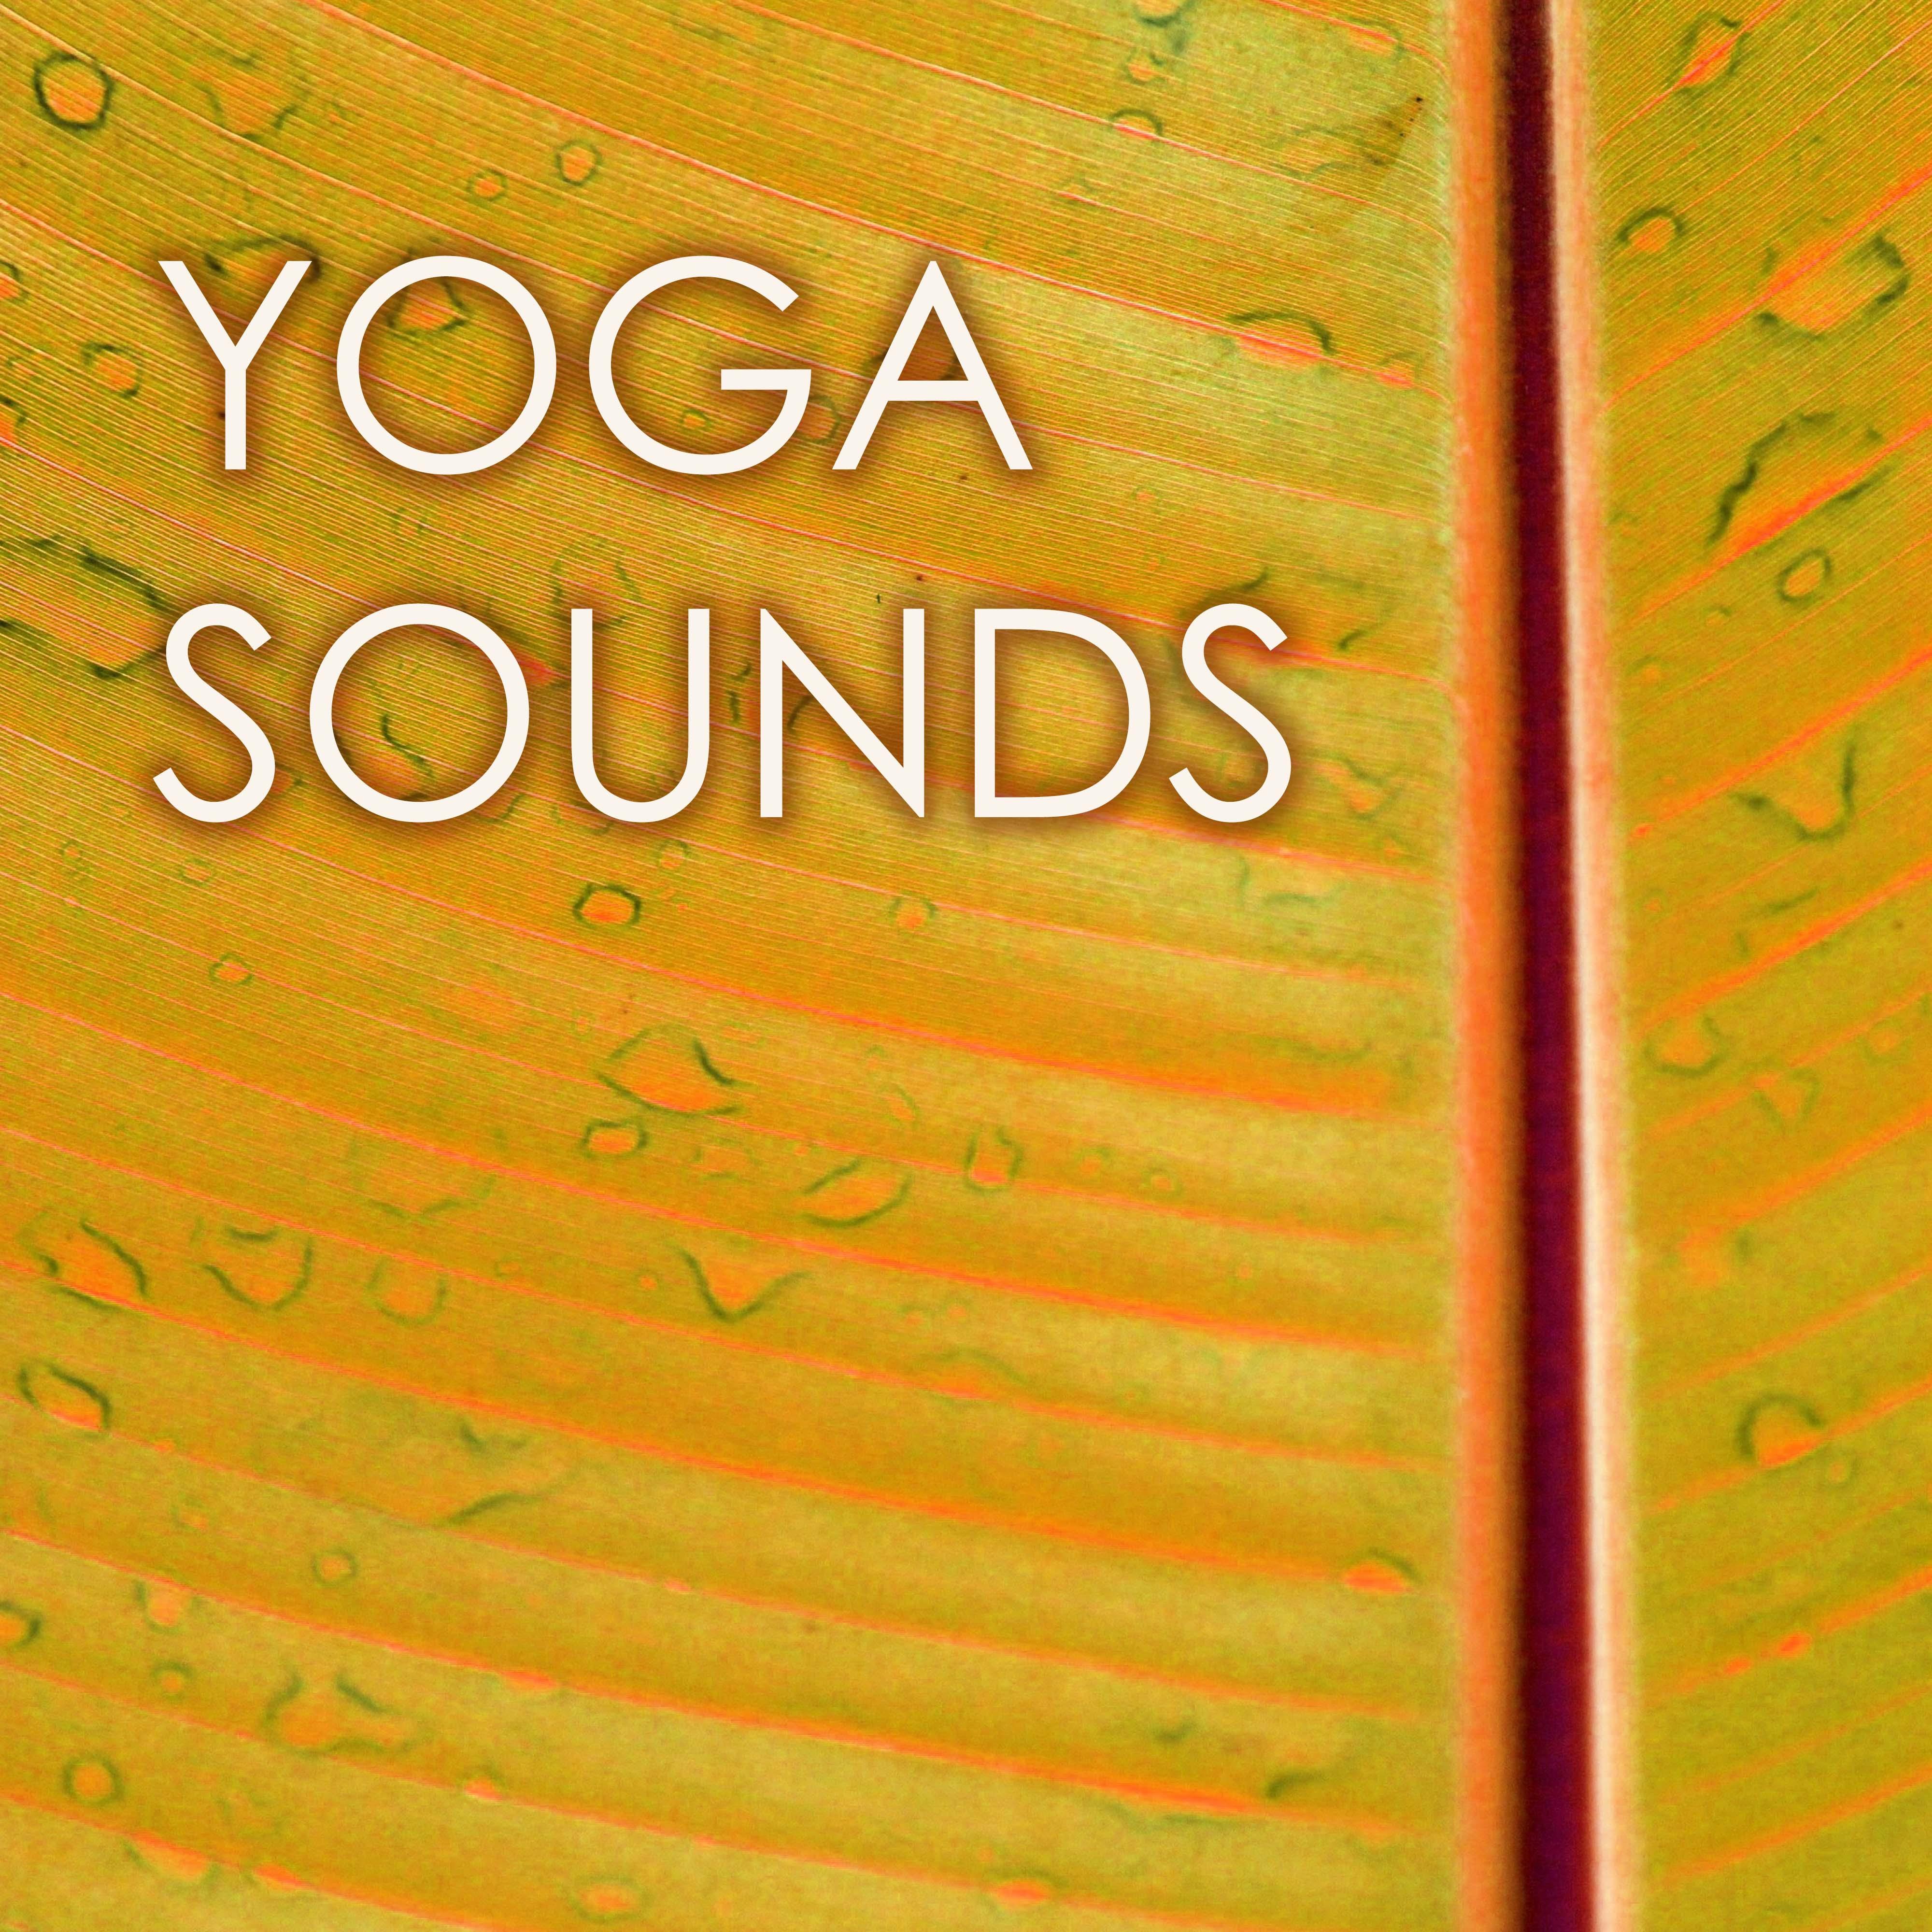 Yoga Sounds - Sun Salutation Music Collection